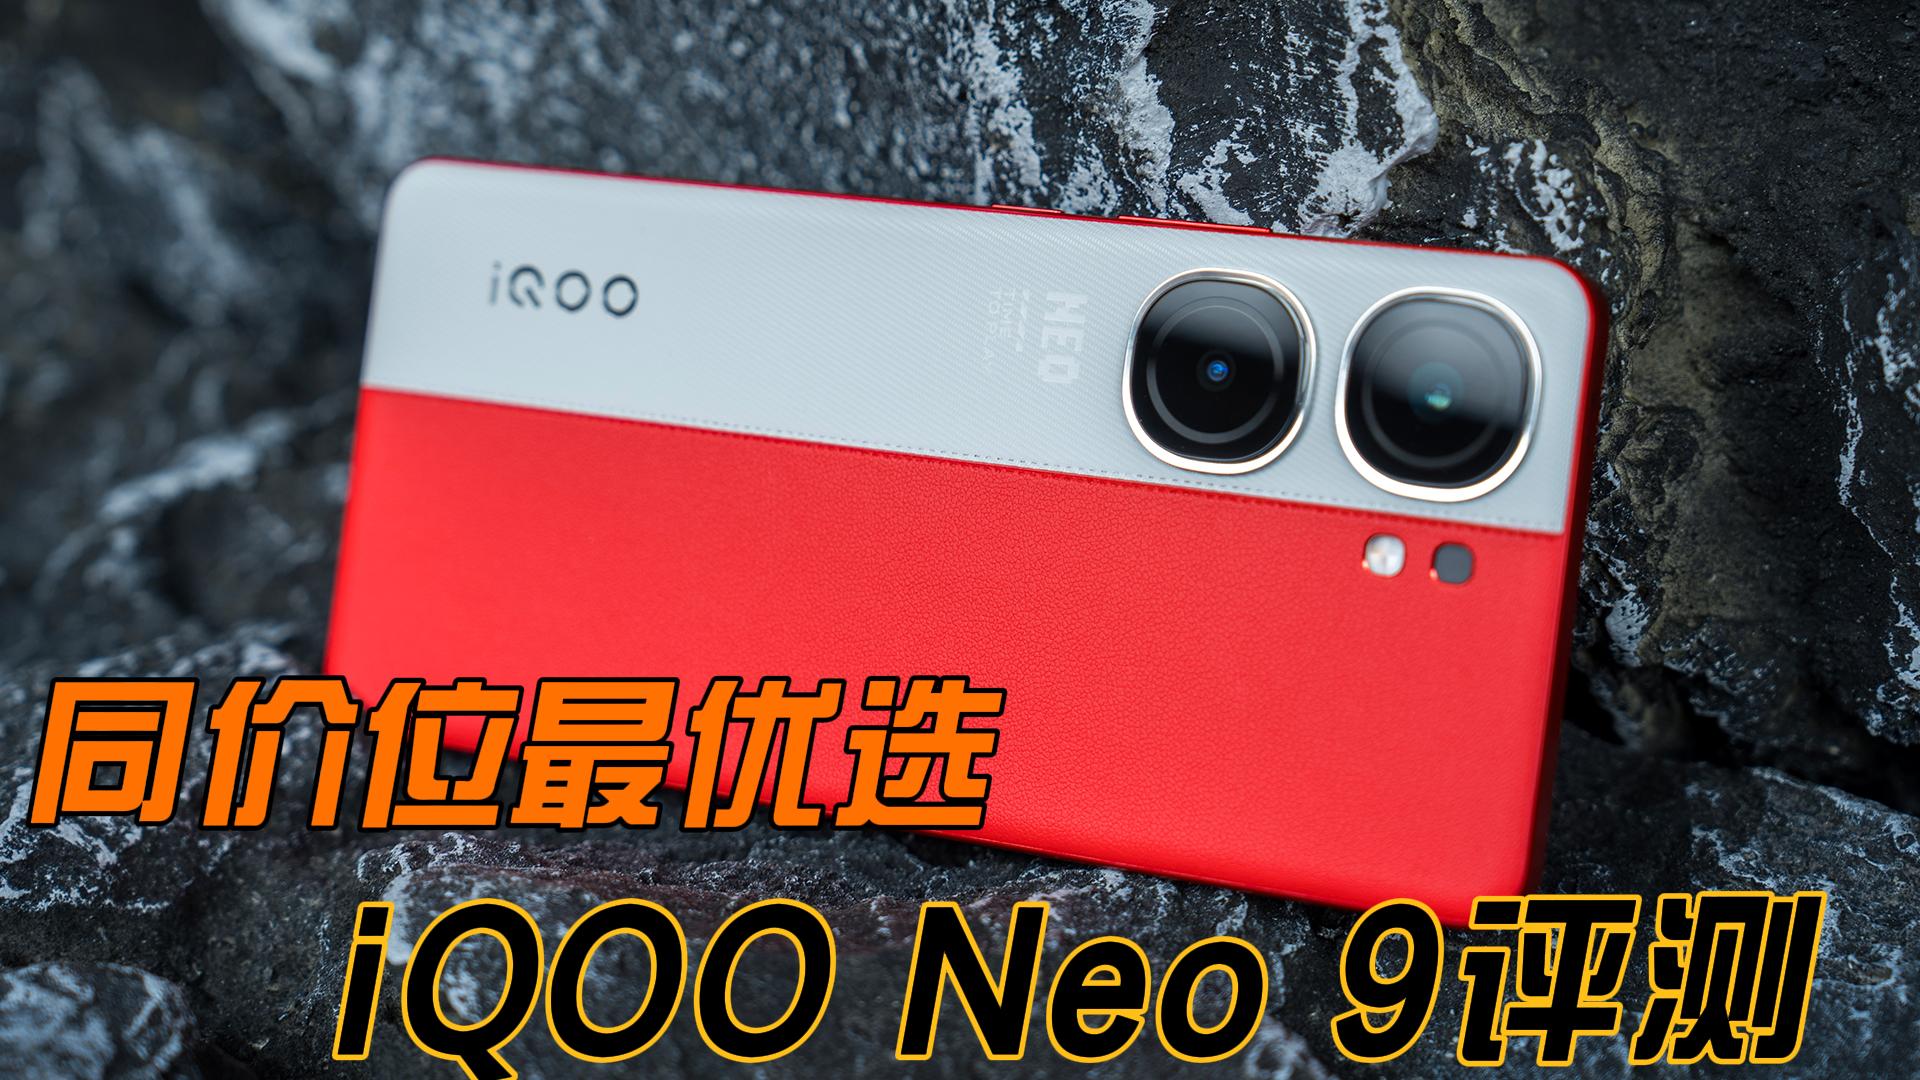 同价位内的最优选择 iQOO Neo9优科技全面评测